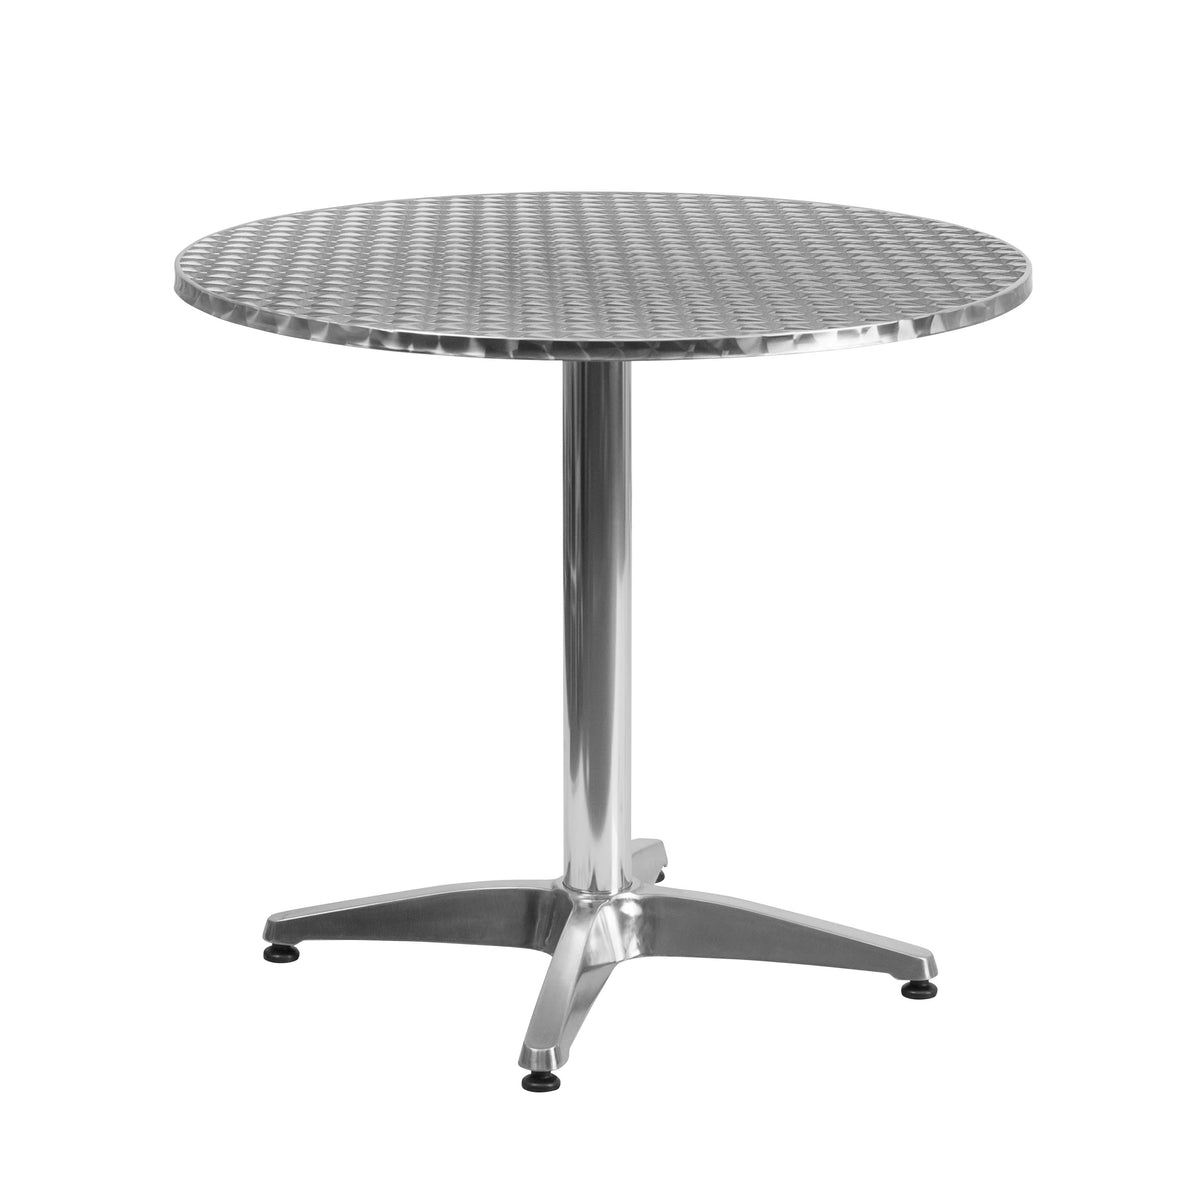 Beige |#| 31.5inch Round Aluminum Indoor-Outdoor Table Set with 4 Beige Rattan Chairs